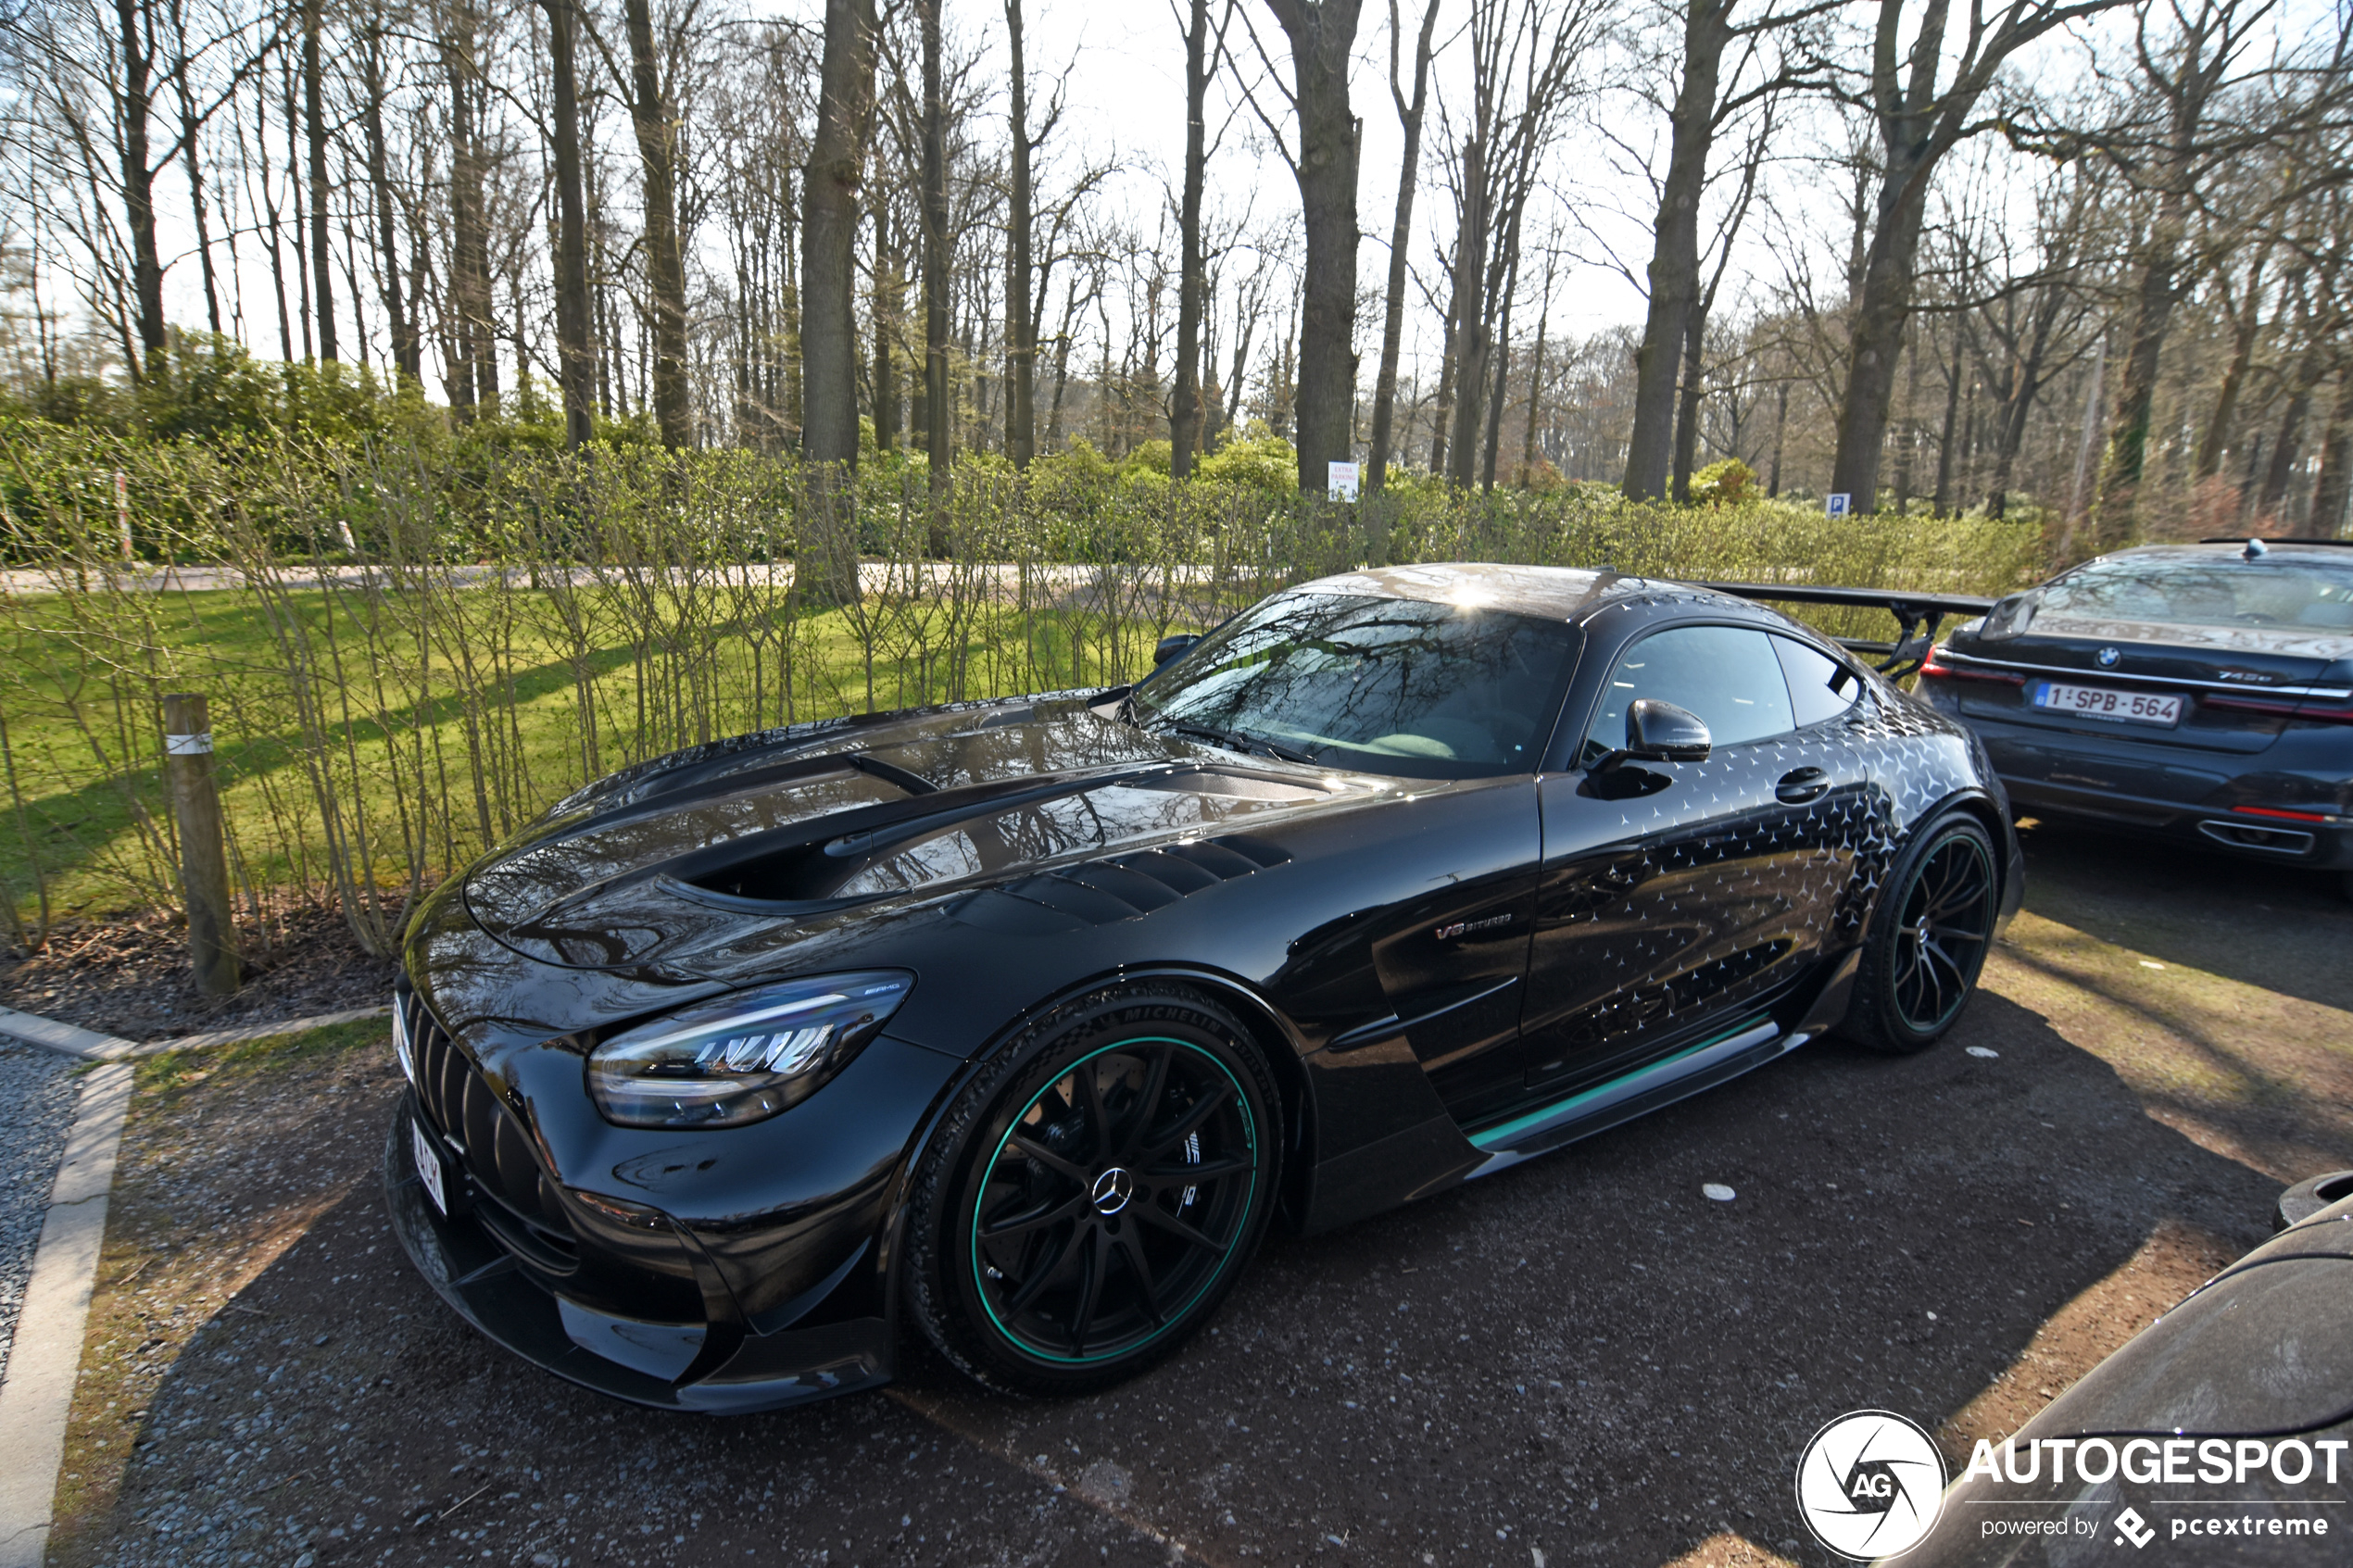 België kan zich opmaken voor Mercedes-AMG Project One